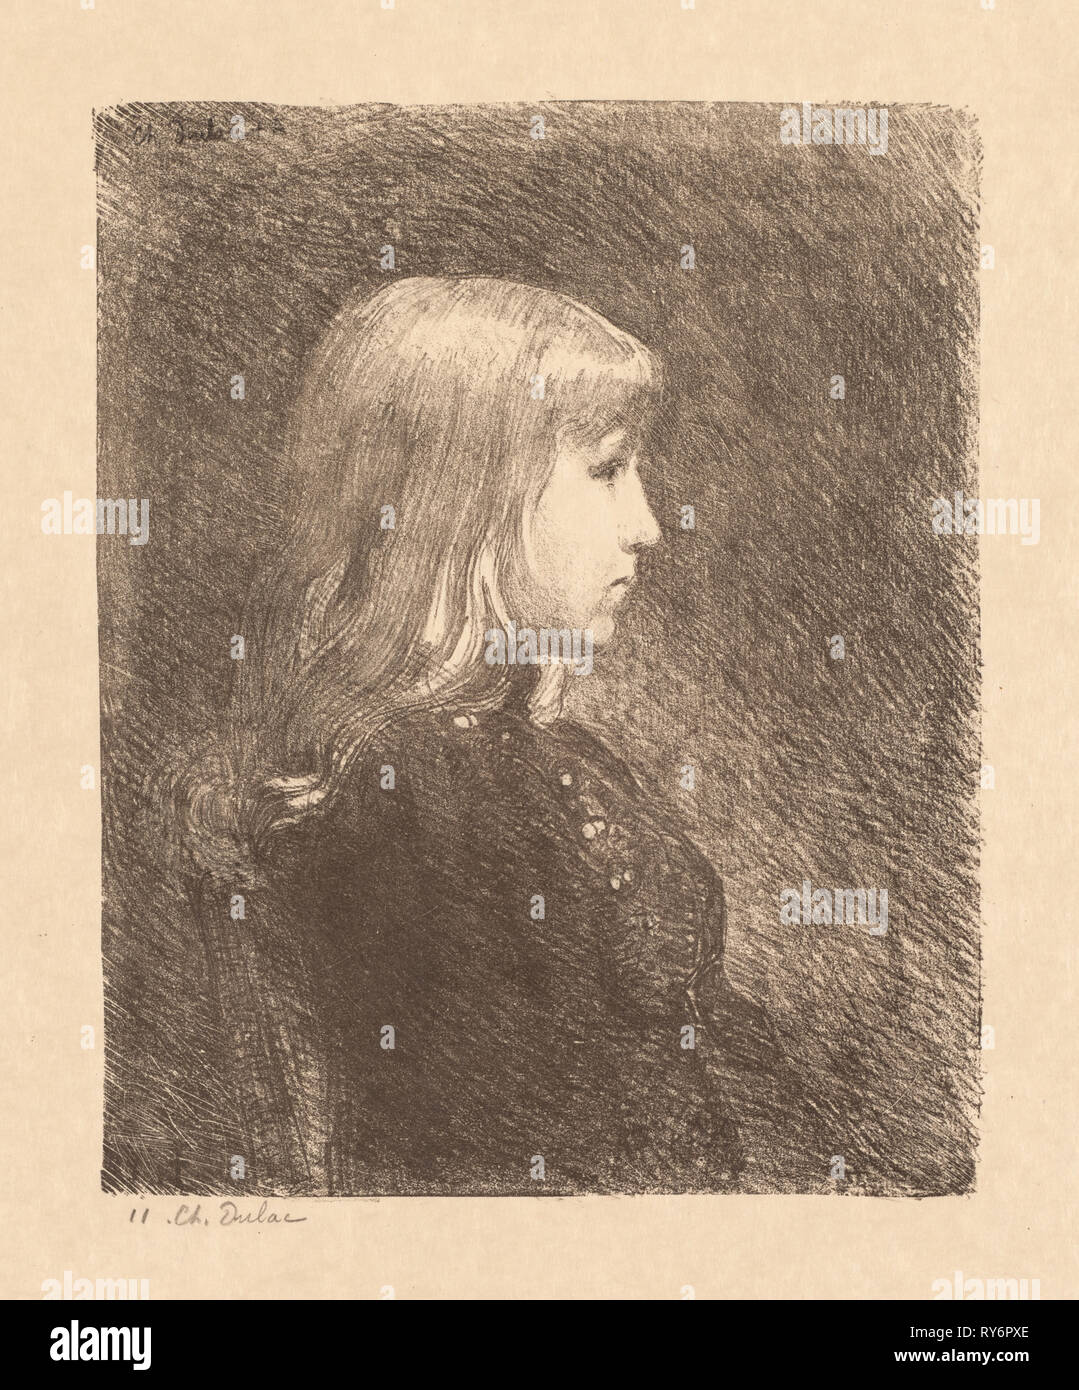 Junge Dame (Jeune fille), 1892. Charles Marie Dulac (Französisch, 1865-1898). Lithographie, in brauner Tinte gedruckt Stockfoto